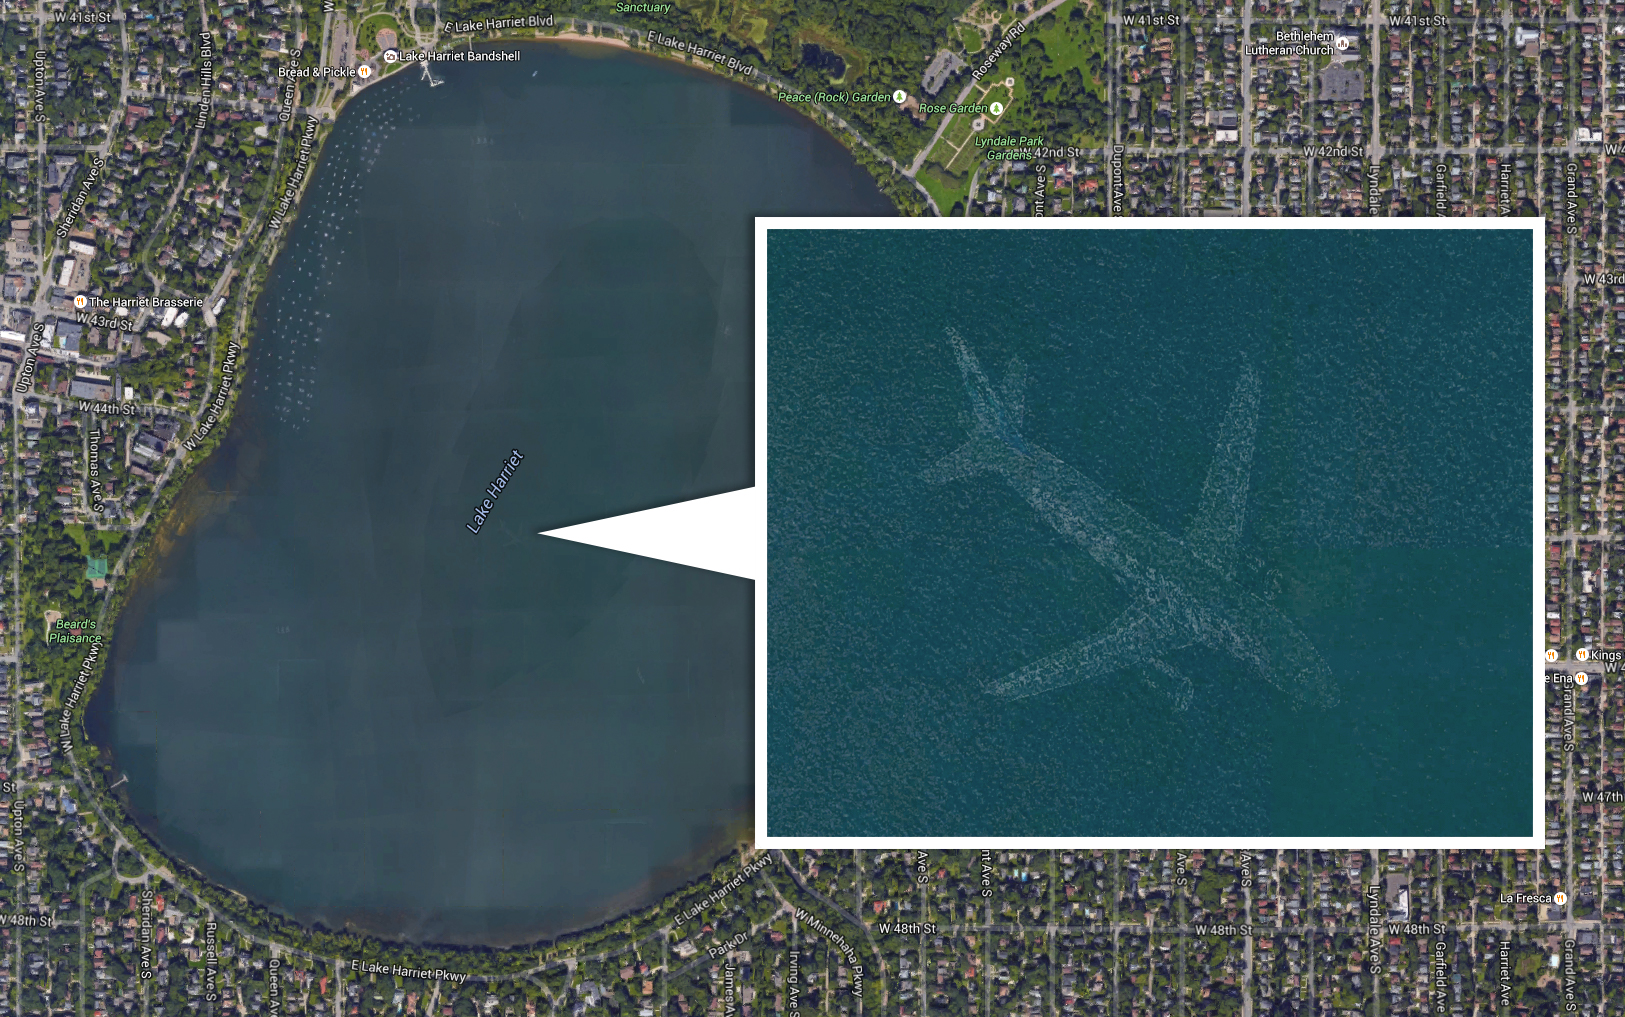 Risolto il mistero dell'aereo subacqueo avvistato con Google Maps